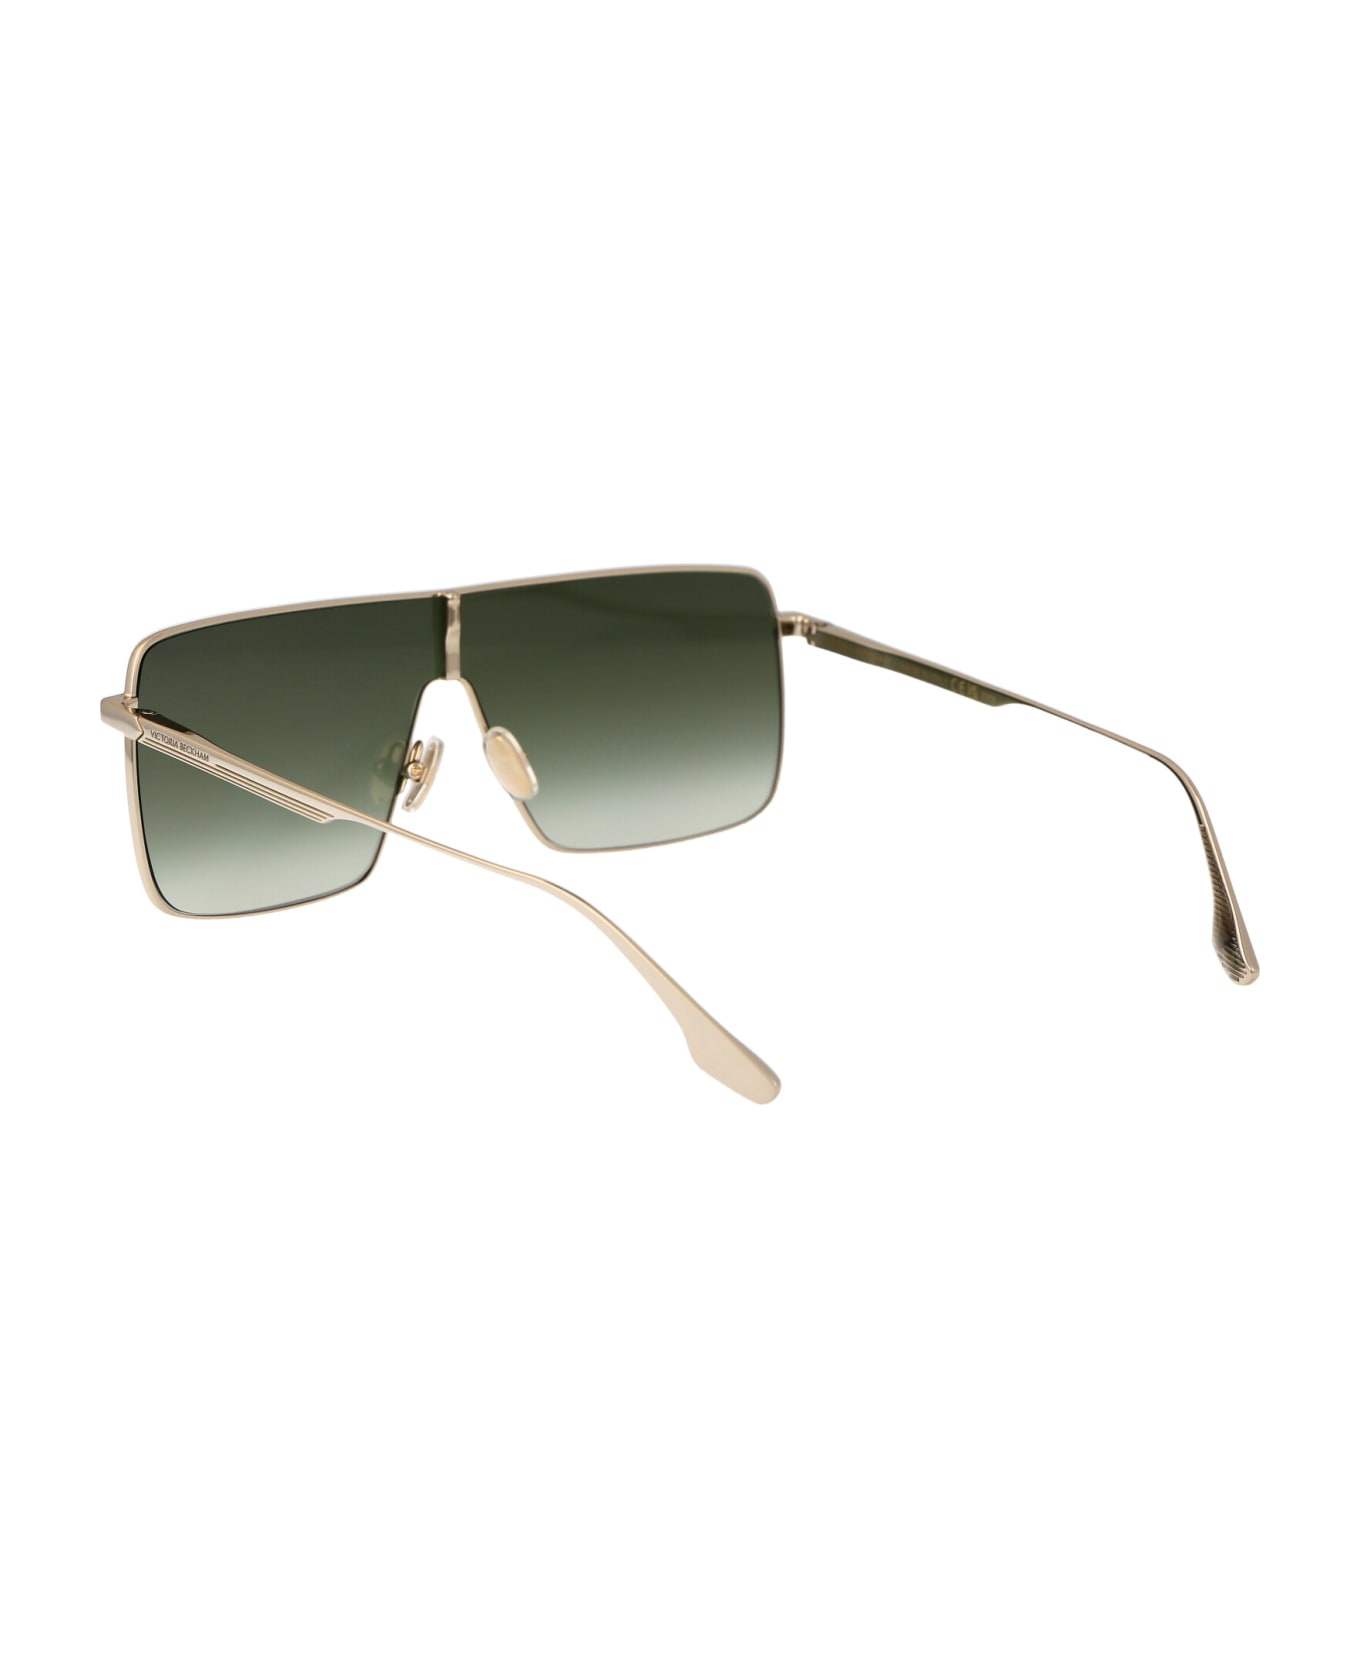 Victoria Beckham Vb238s Sunglasses - 700 GOLD/KHAKI